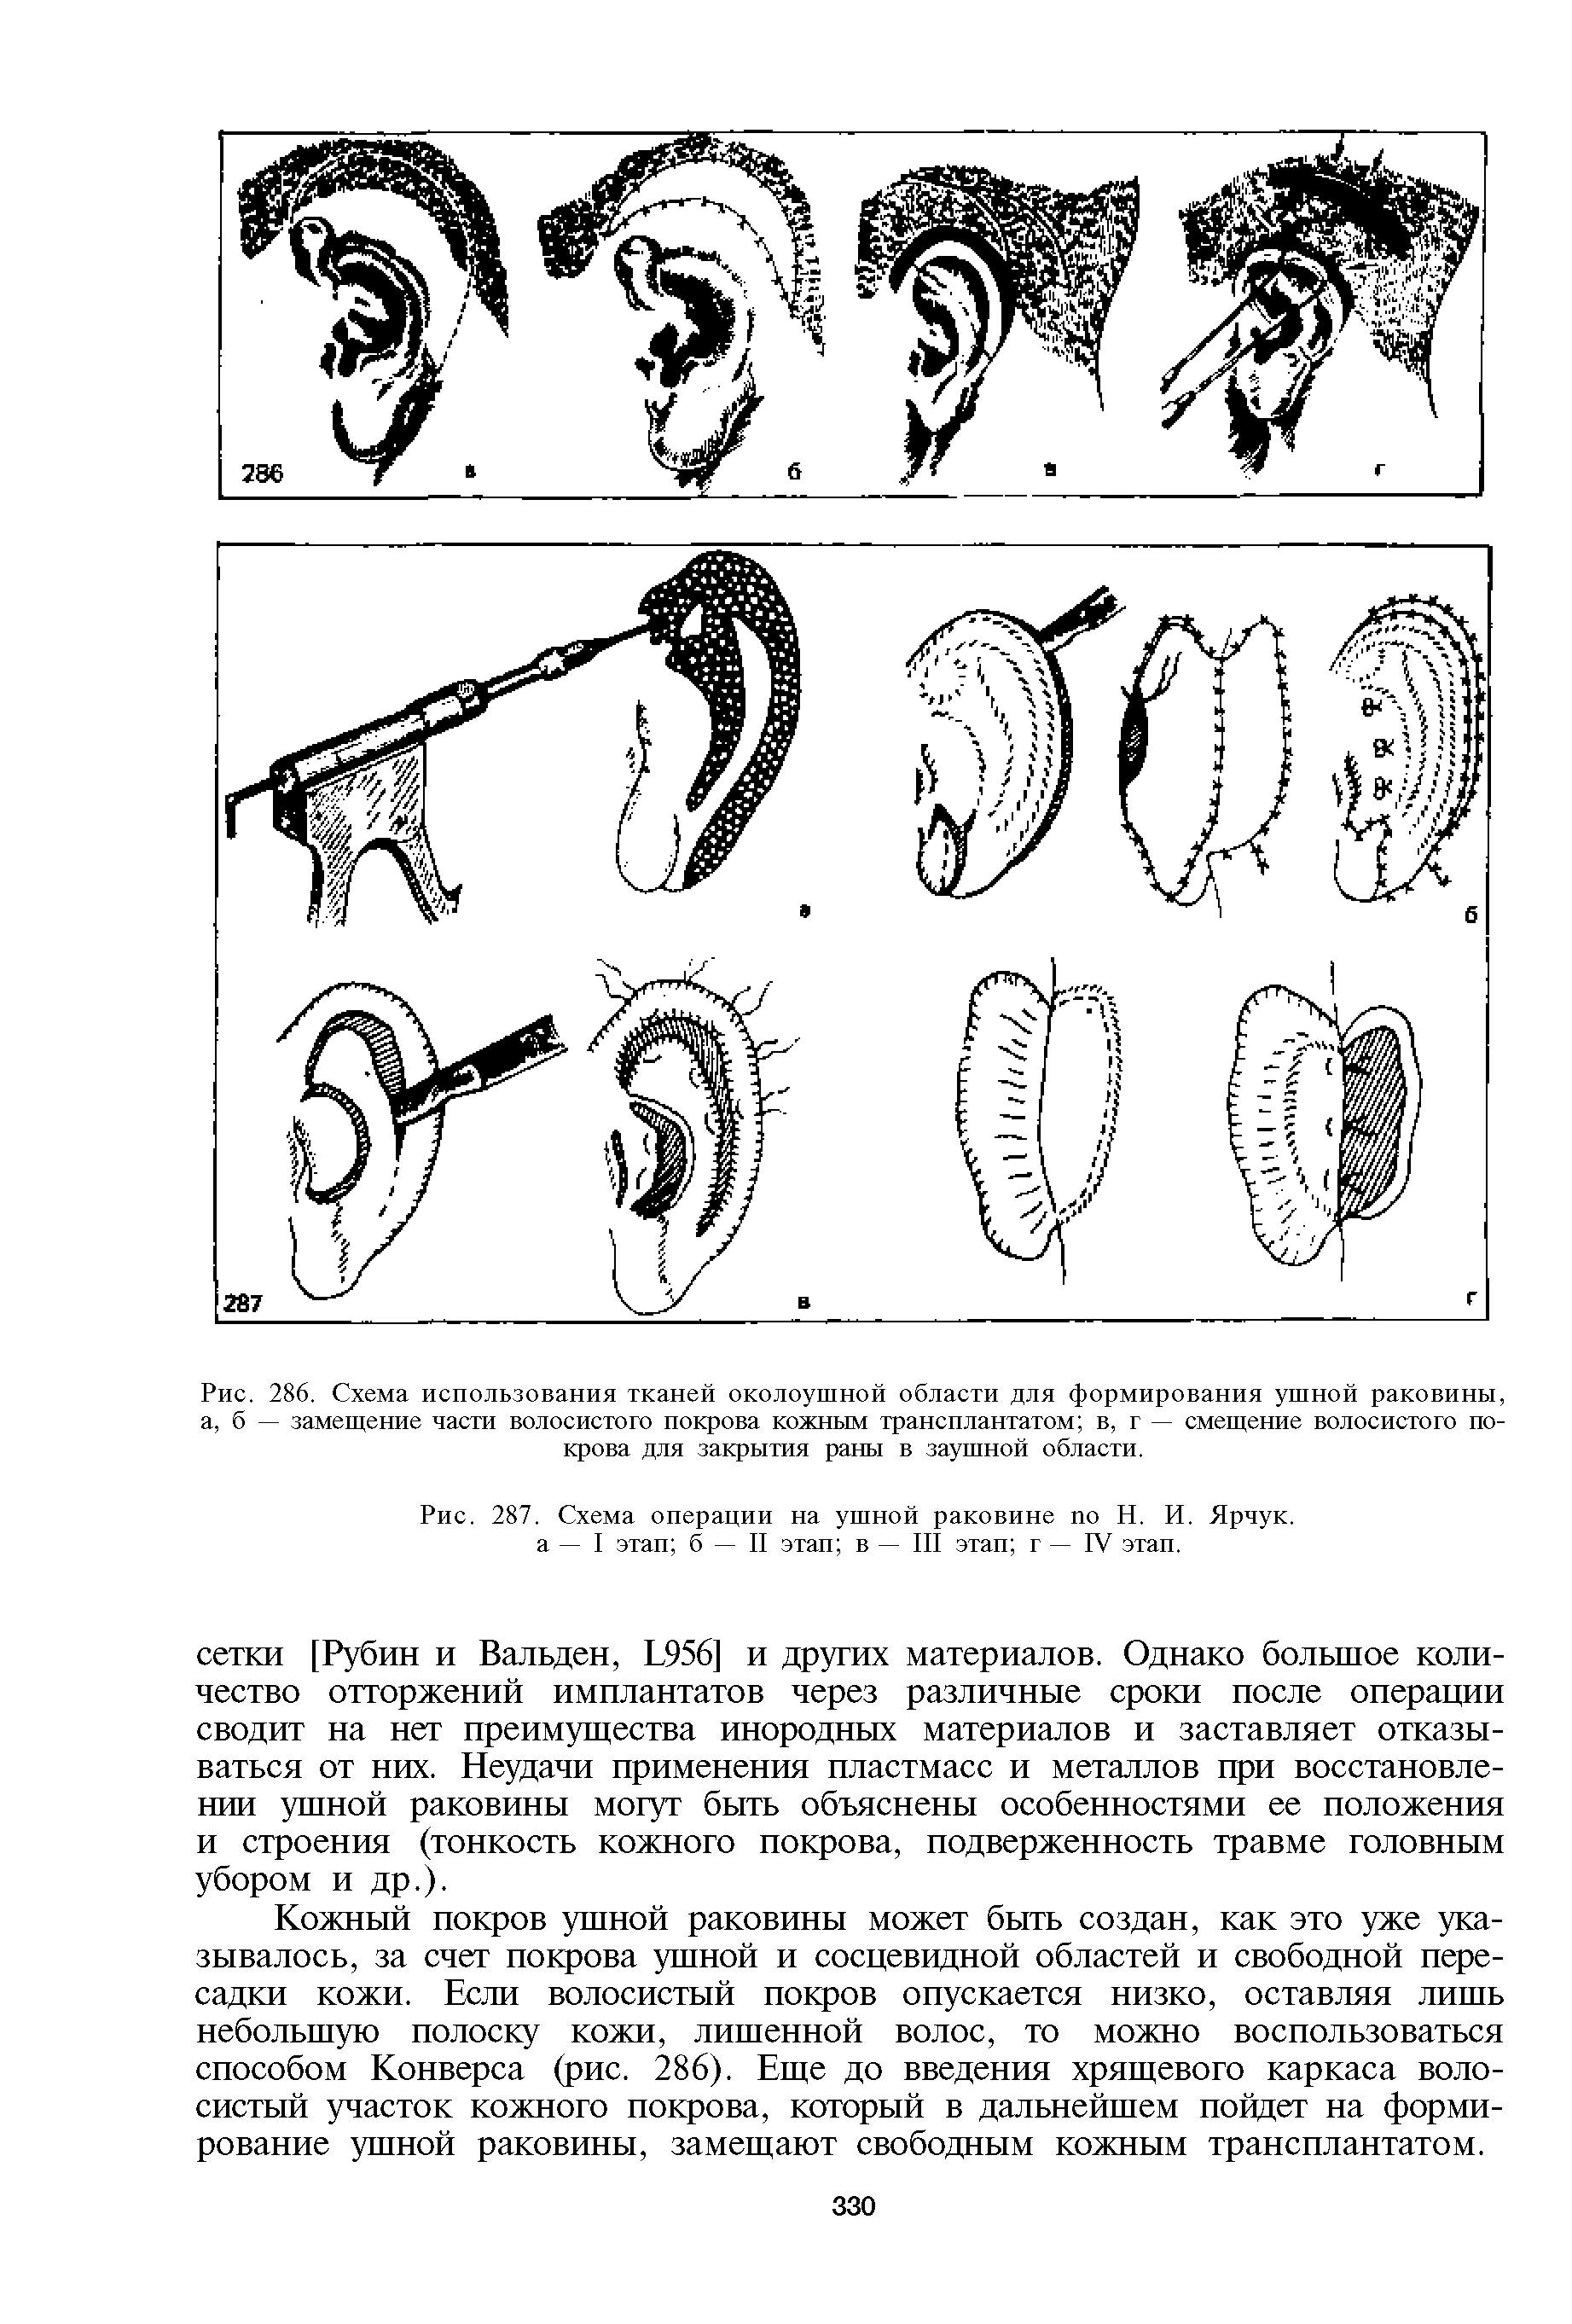 Рис. 287. Схема операции на ушной раковине по Н. И. Ярчук. а — I этап б — II этап в — III этап г — IV этап.